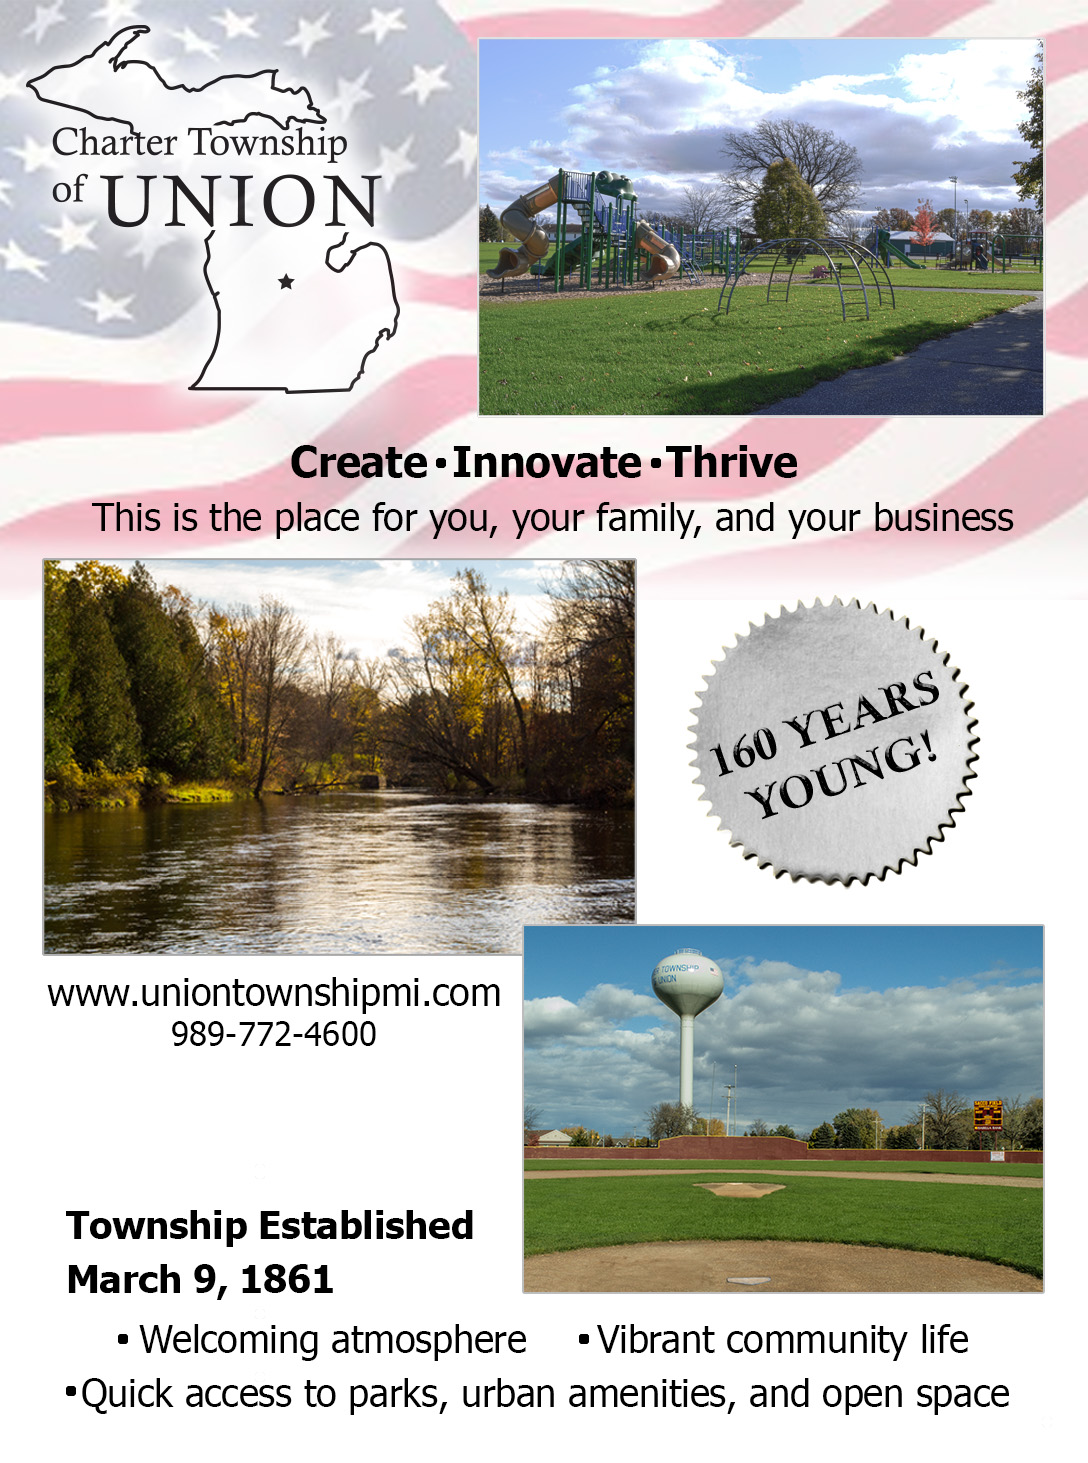 Union Township, NJ - Official Website